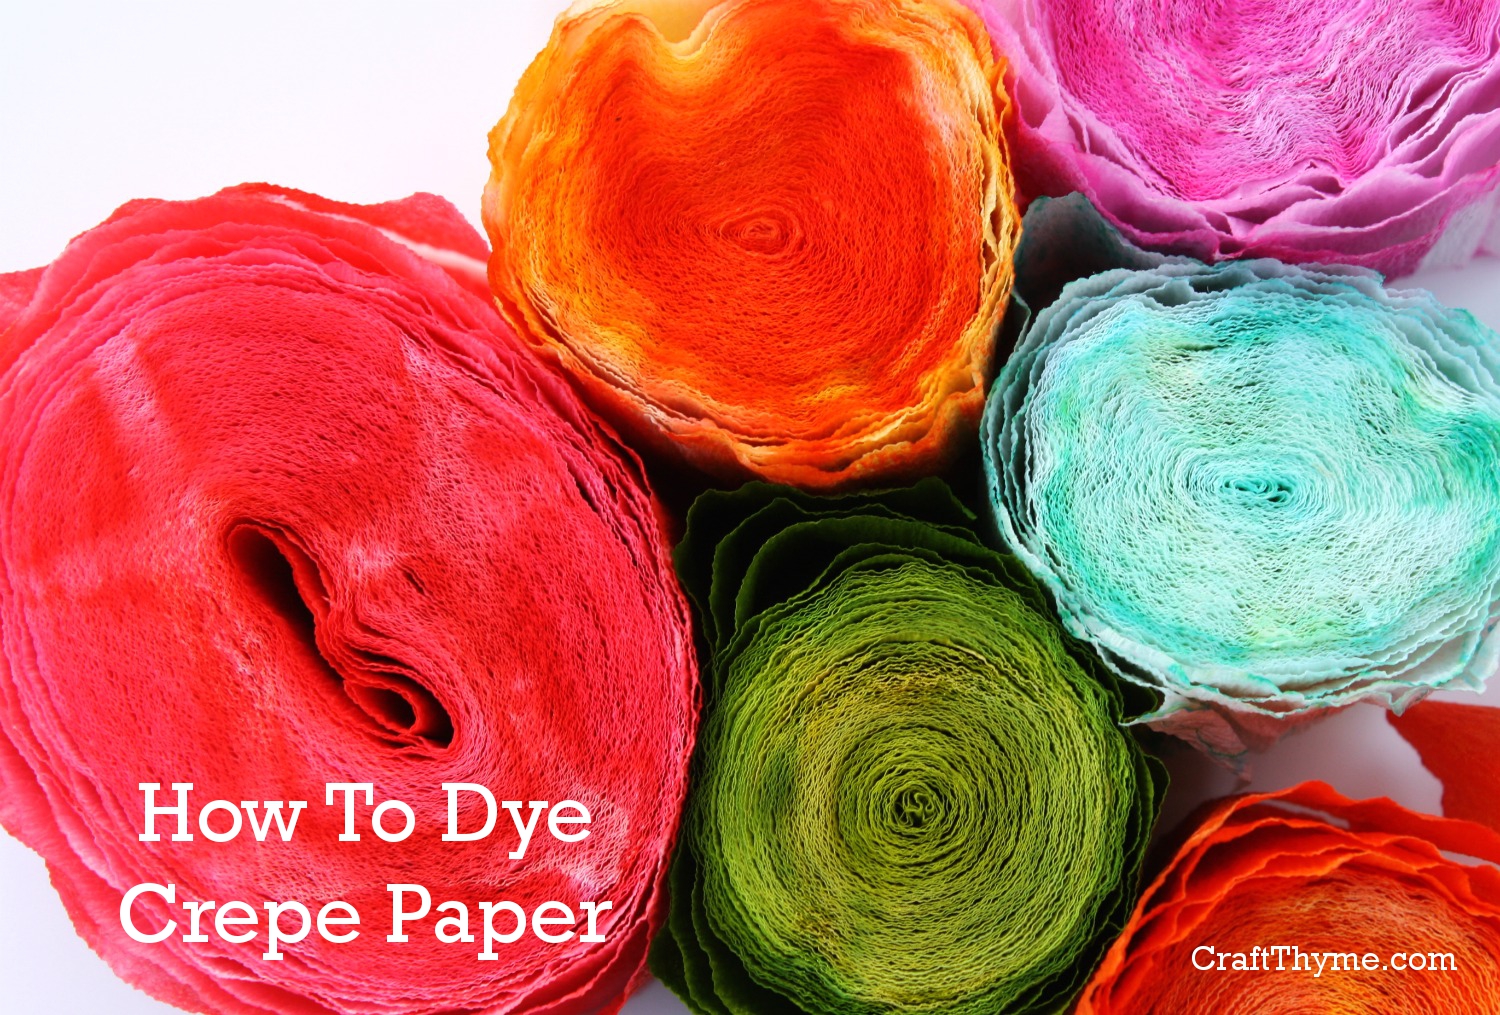 How to Dye Crepe Paper – The Reaganskopp Homestead